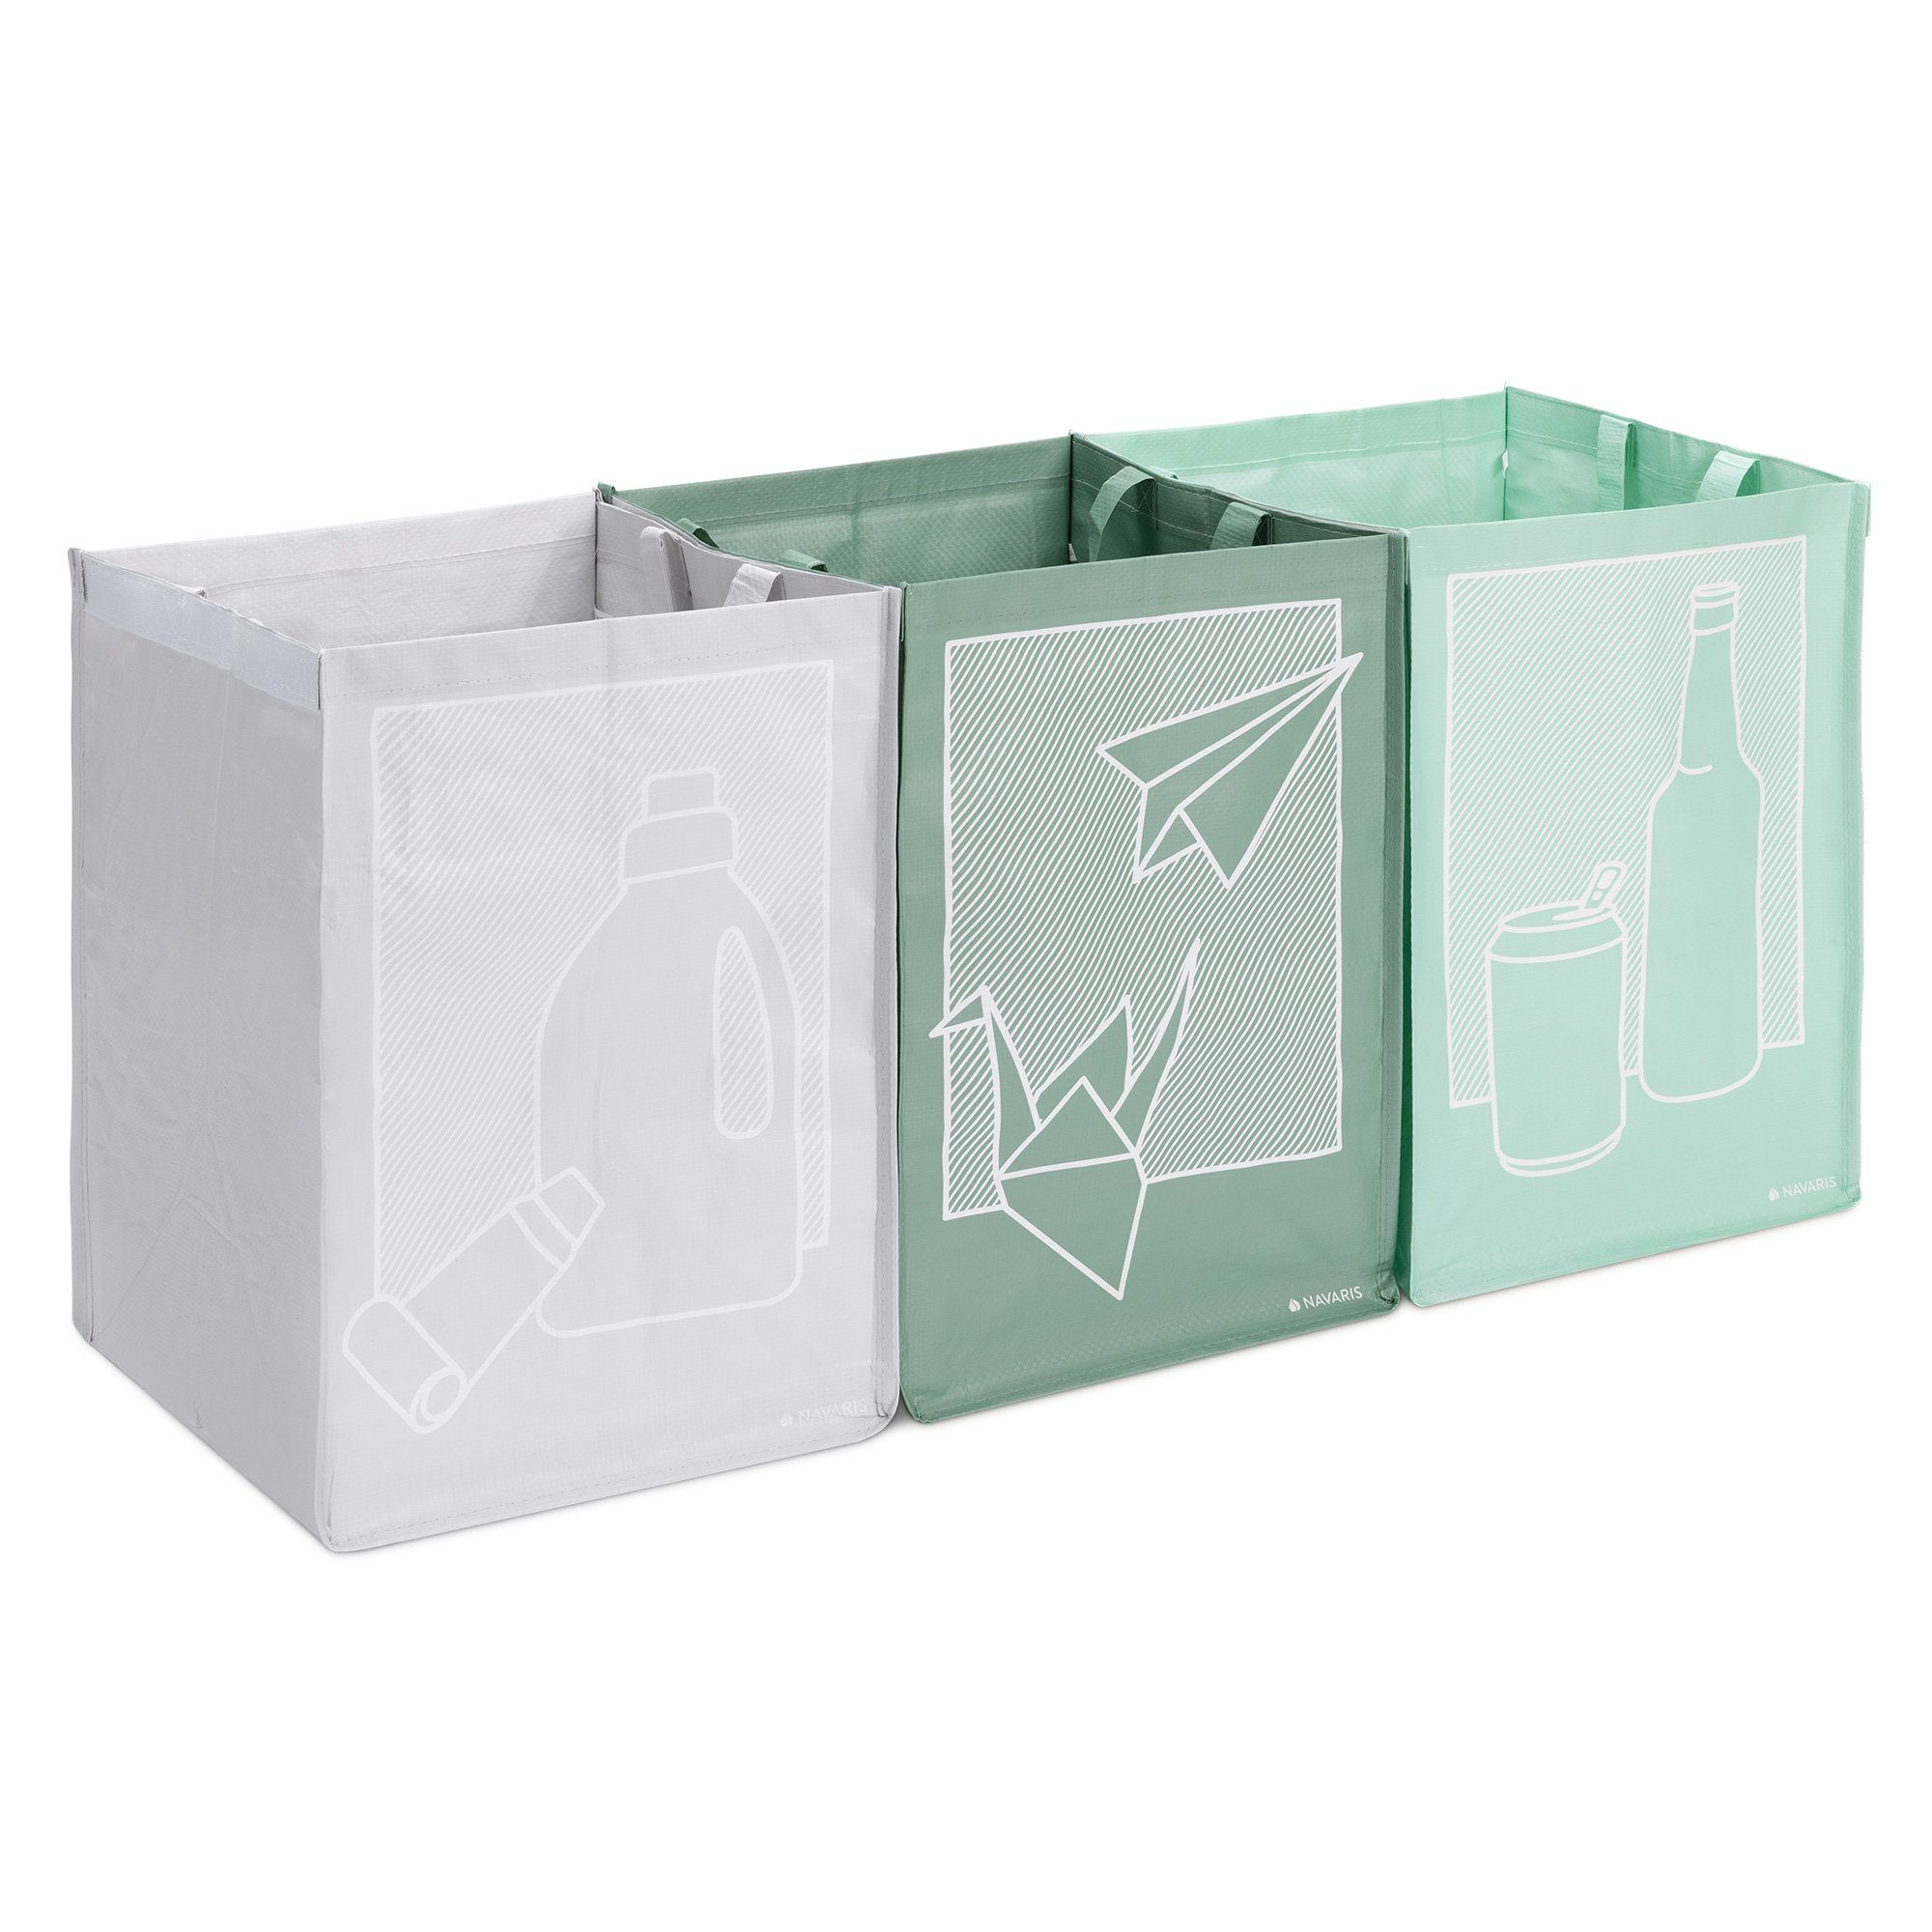 Navaris Mülltrennsystem, 3er Set Recycling Taschen für Glas Plastik und Papier - 3fach Mülleimer Müllsortierer - Mülltrennsystem Behälter für Mülltrennung